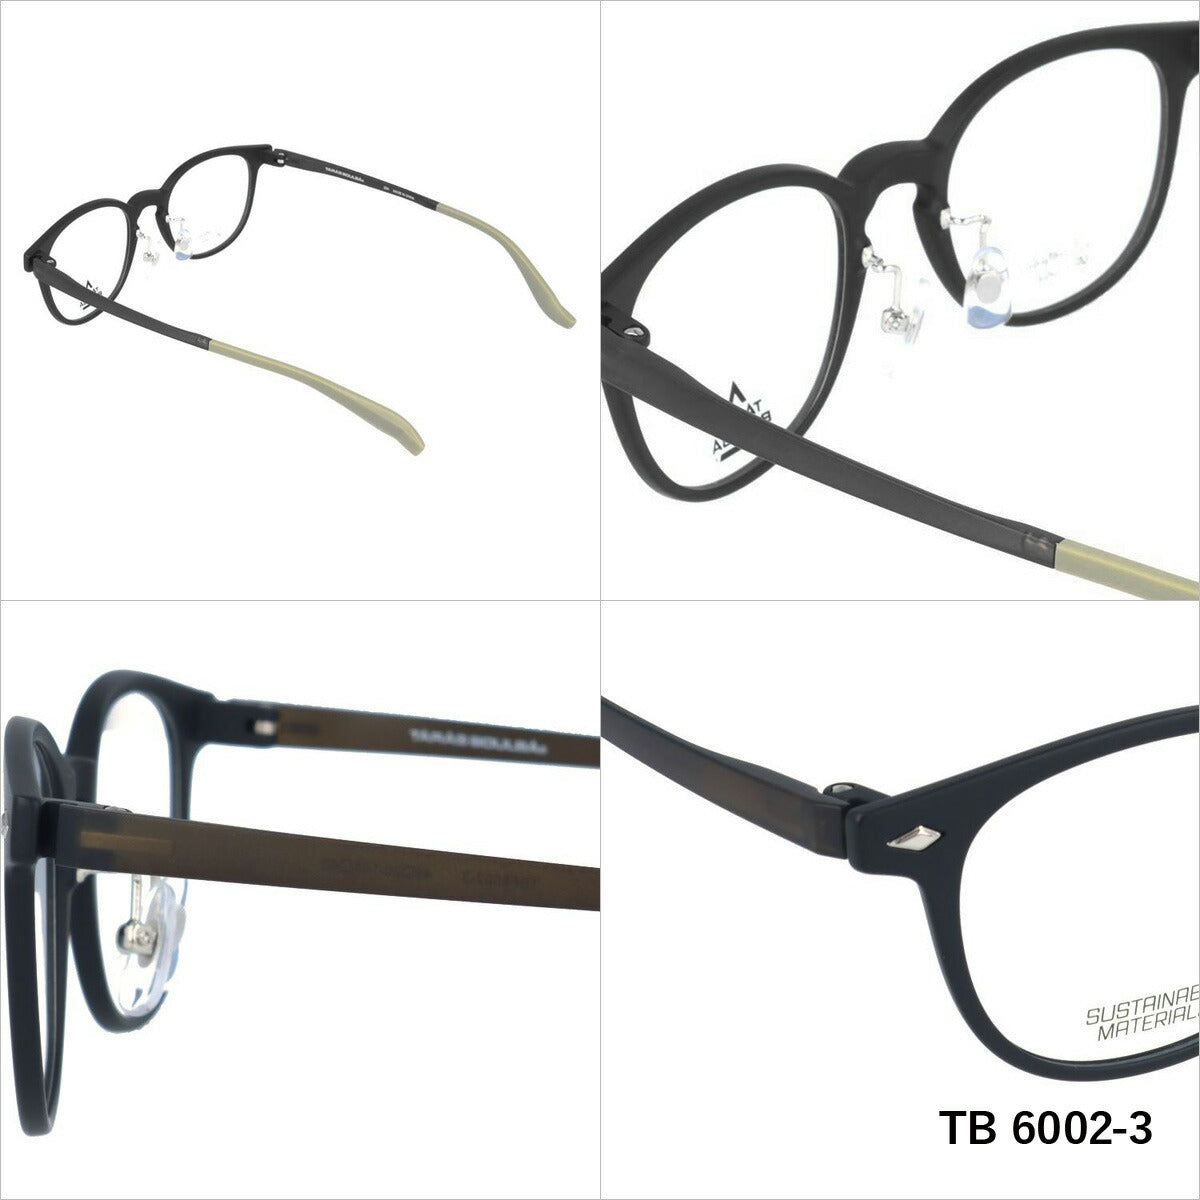 タラスブルバ メガネ 眼鏡 フレーム 度付き 伊達 カラーレンズ メンズ レディース TARASBOULBA ブランド TBS 6002 49 ボストン | 老眼鏡 PCレンズ ブルーライトカット 遠近両用 対応可能 紫外線 対策 おすすめ 人気 プレゼント